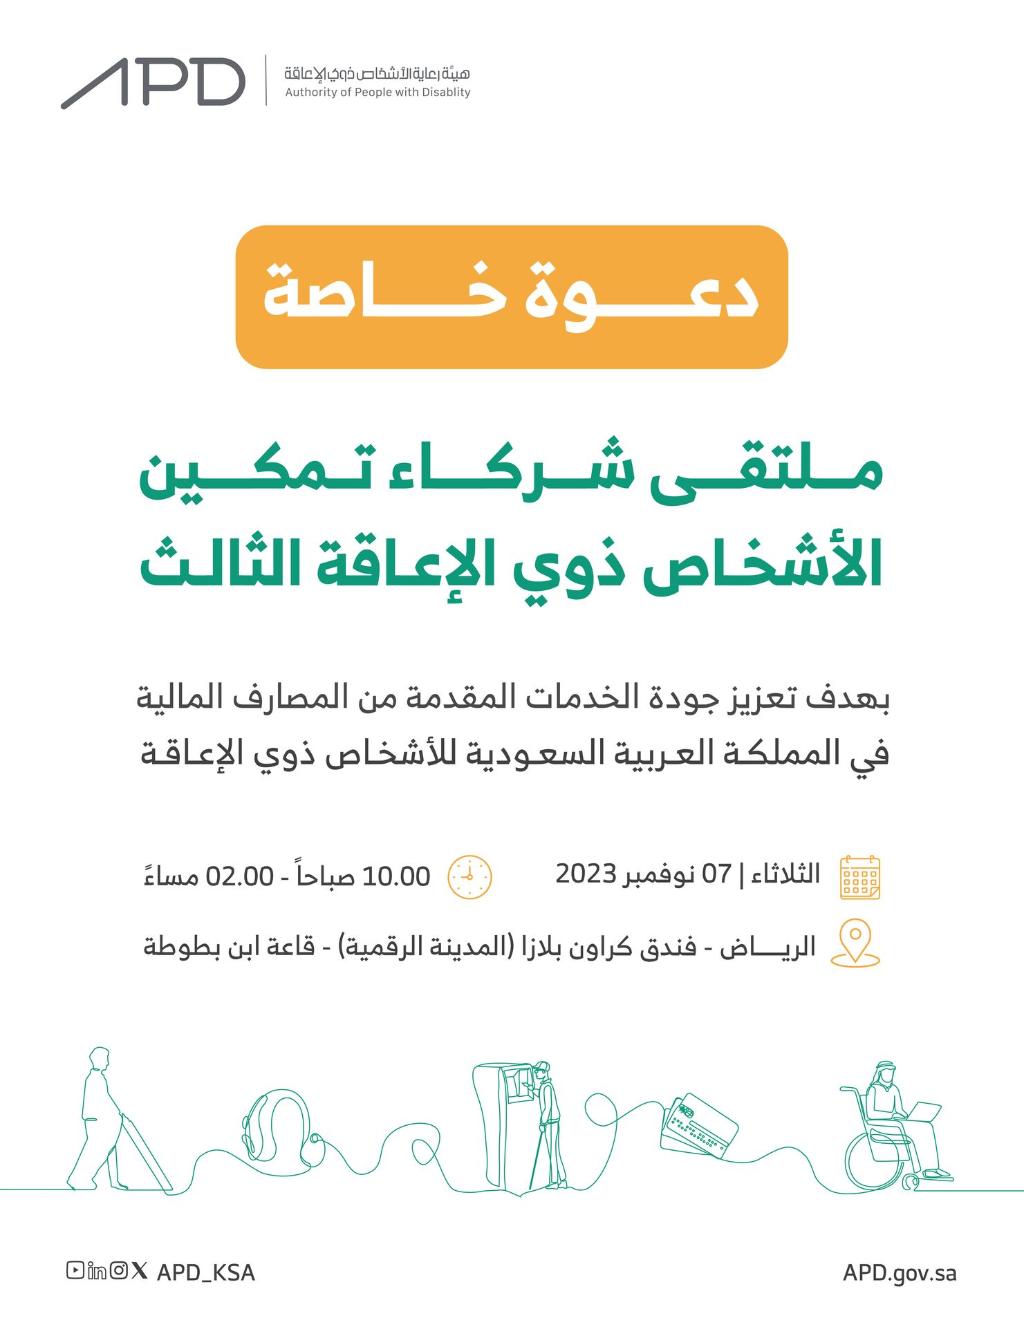 بهدف تعزيز جودة الخدمات المقدمة من المصارف المالية في المملكة العربية السعودية للأشخاص ذوي الإعاقة، الثلاثاء ٧ نوفمبر من الساعة ١٠صباحًا وحتى الساعة٢مساءً، في فندق كراون بلازا بالمدينة الرقمية، قاعة ابن بطوطة